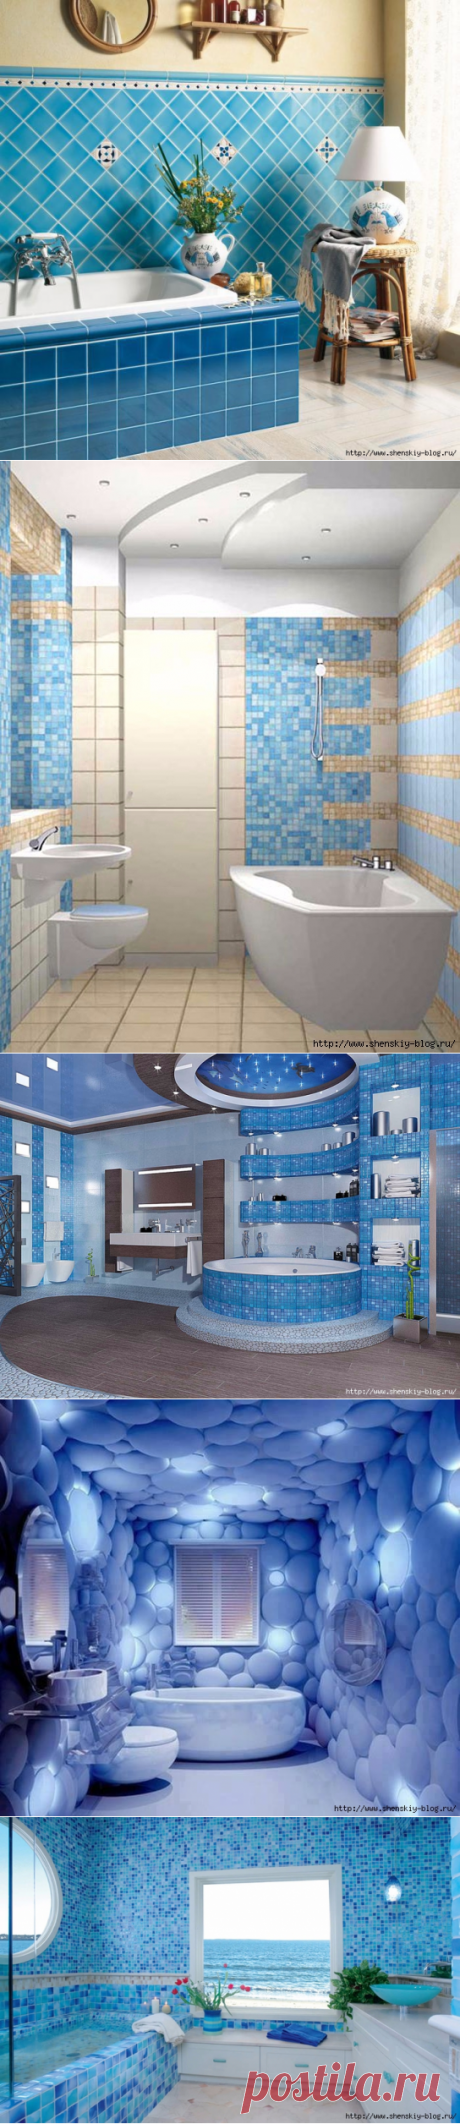 50 идей для ремонта ванной в синем/голубом цвете!